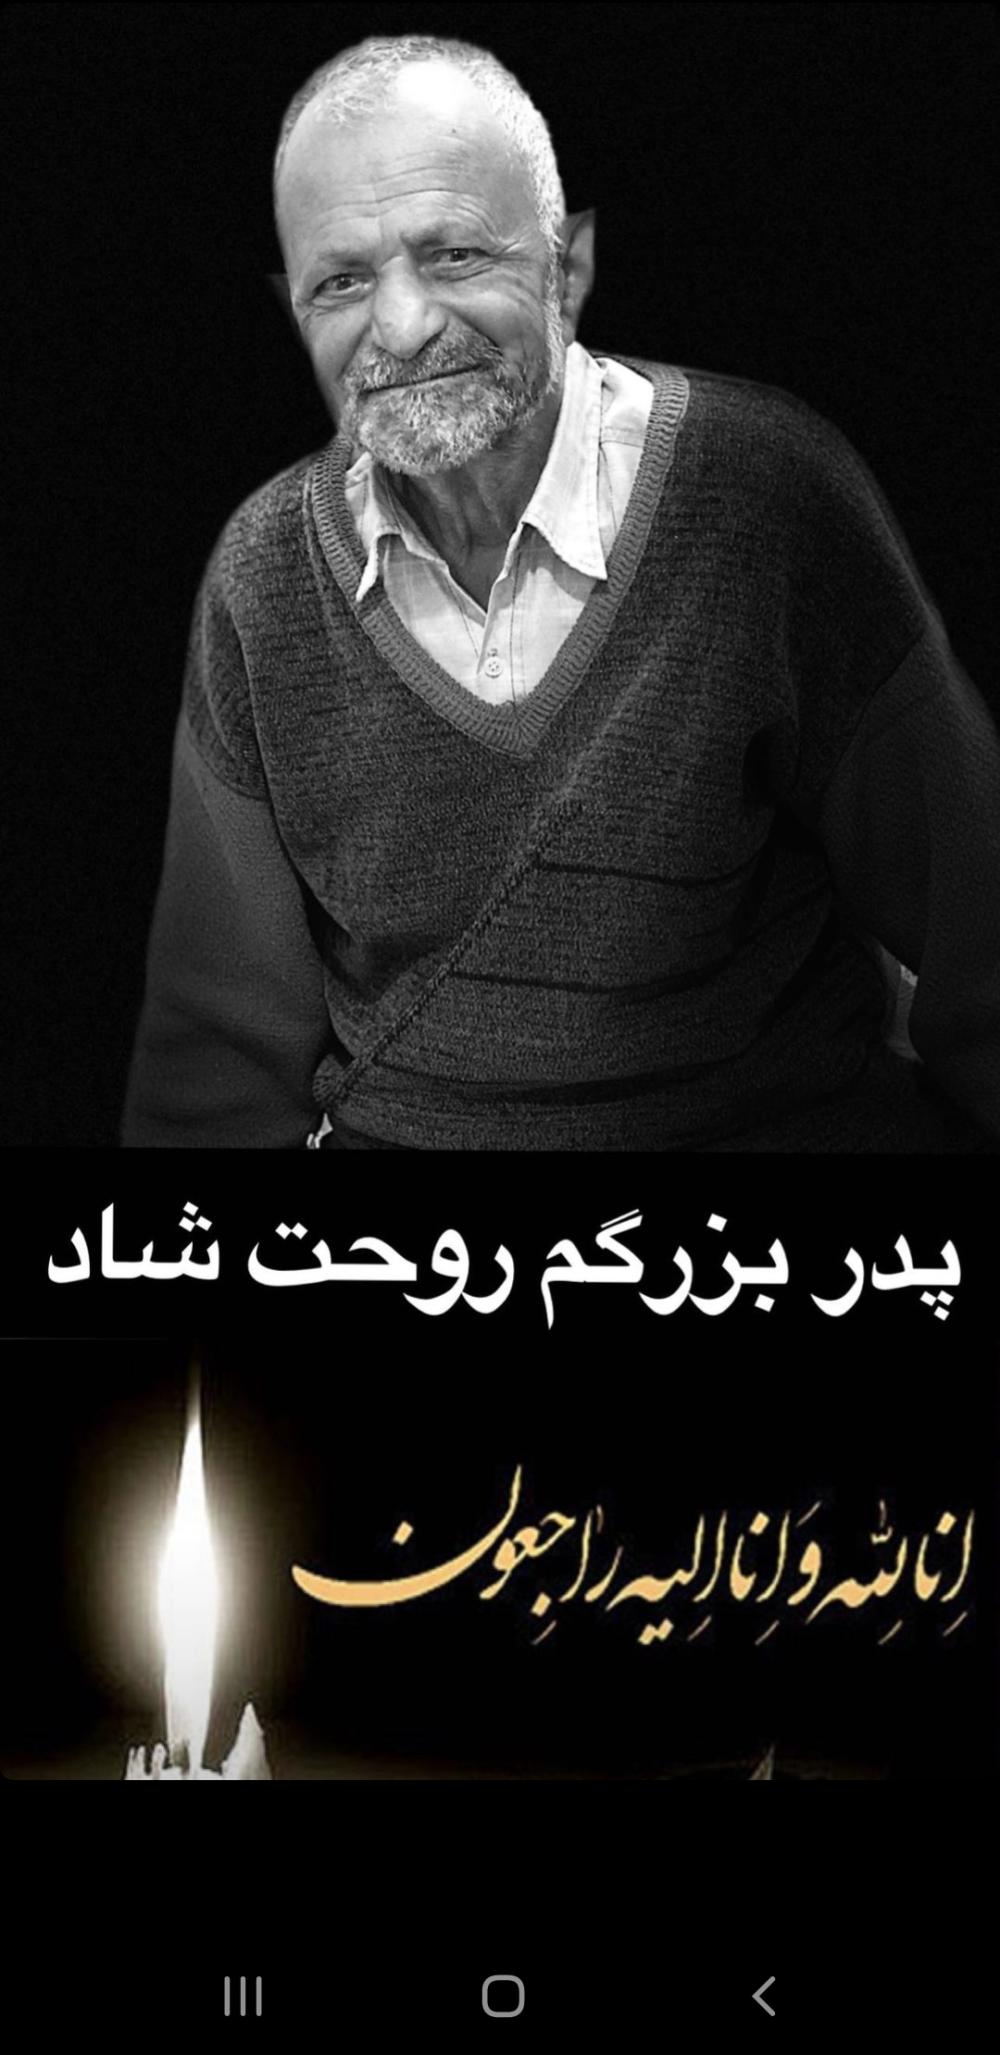 یادبود شادروان حاج حسینعلی شجاعی